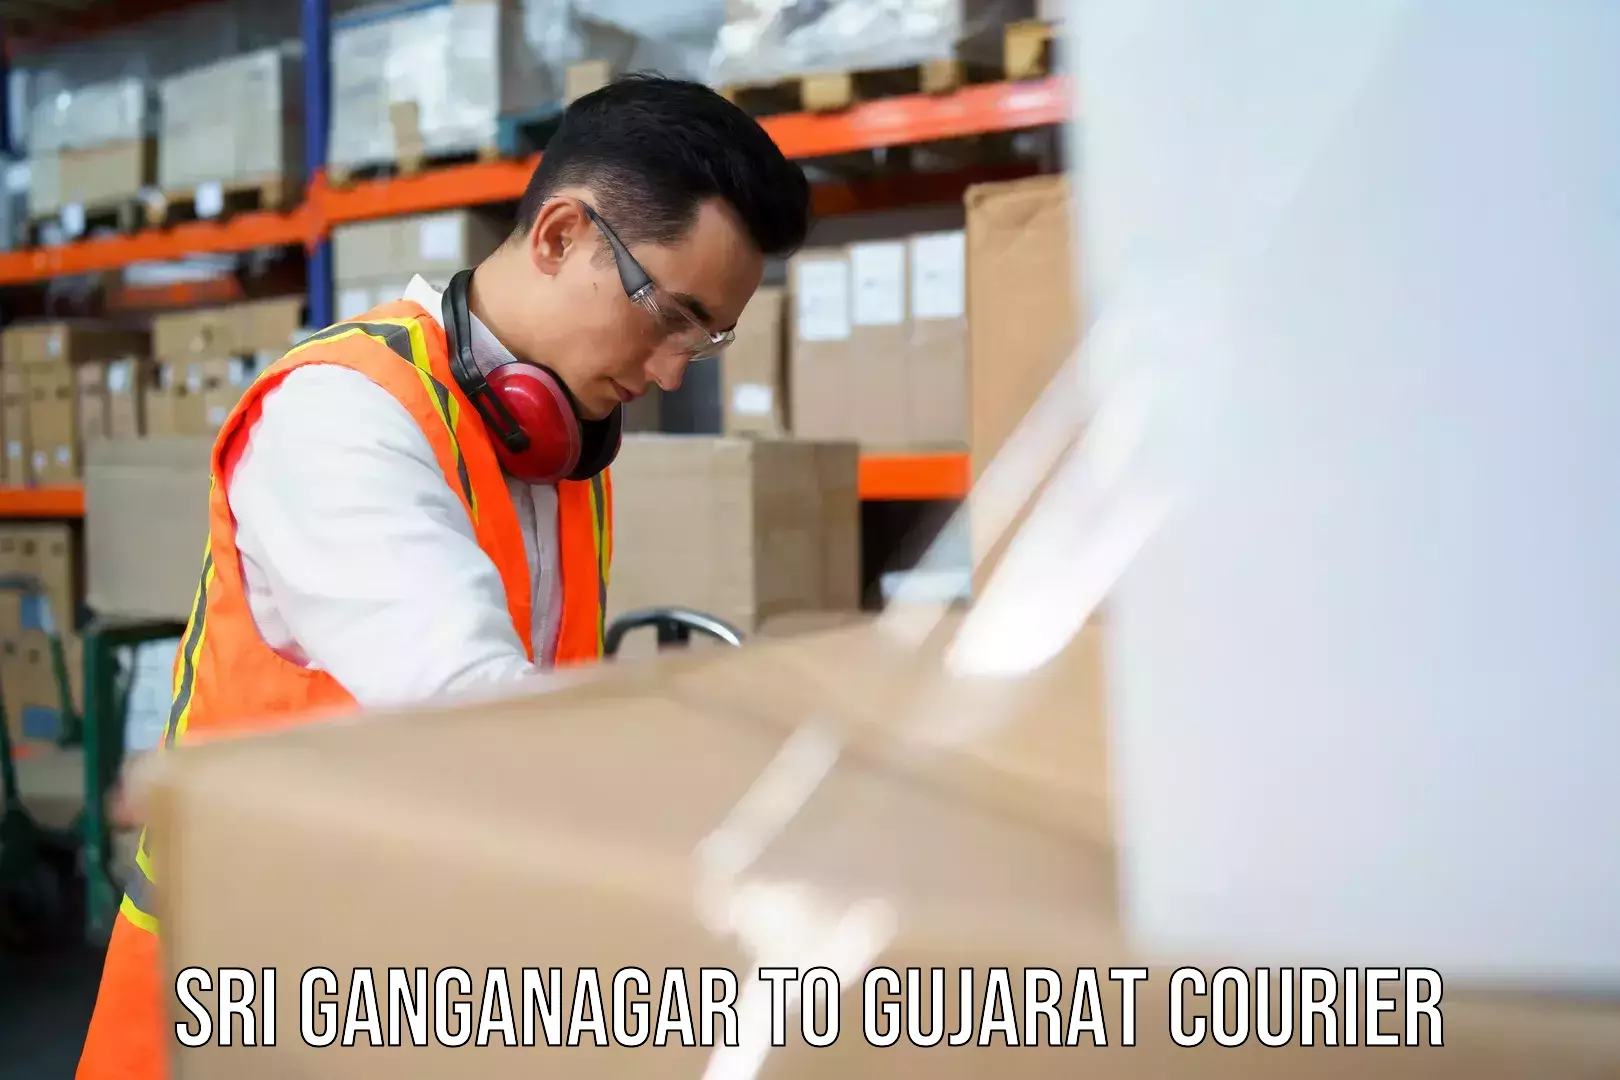 Courier service partnerships Sri Ganganagar to Bilimora